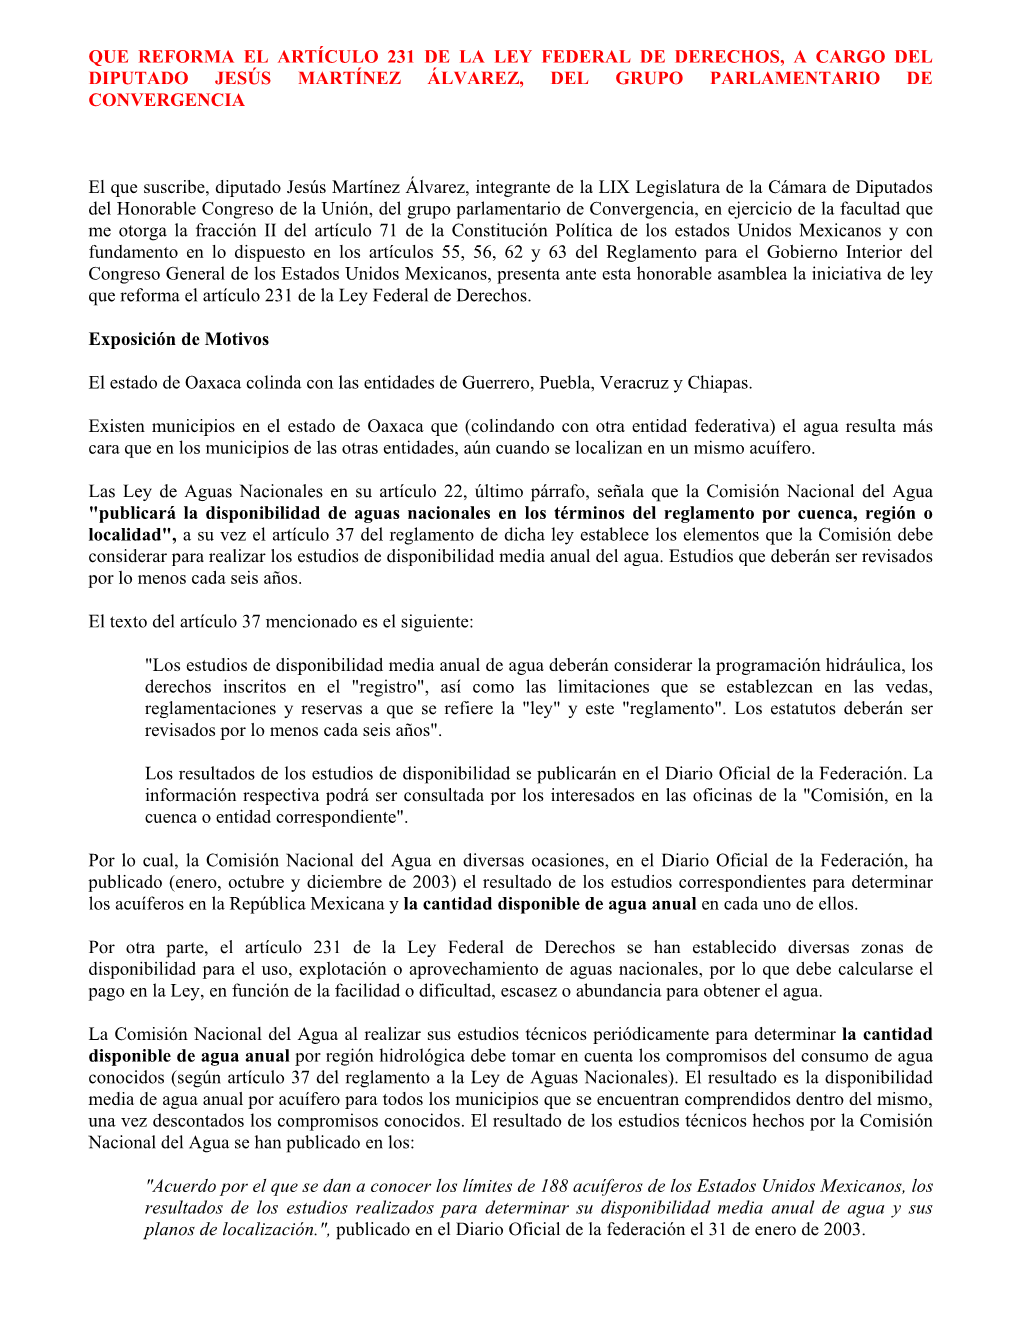 Que Reforma El Artículo 231 De La Ley Federal De Derechos, a Cargo Del Diputado Jesús Martínez Álvarez, Del Grupo Parlamentario De Convergencia